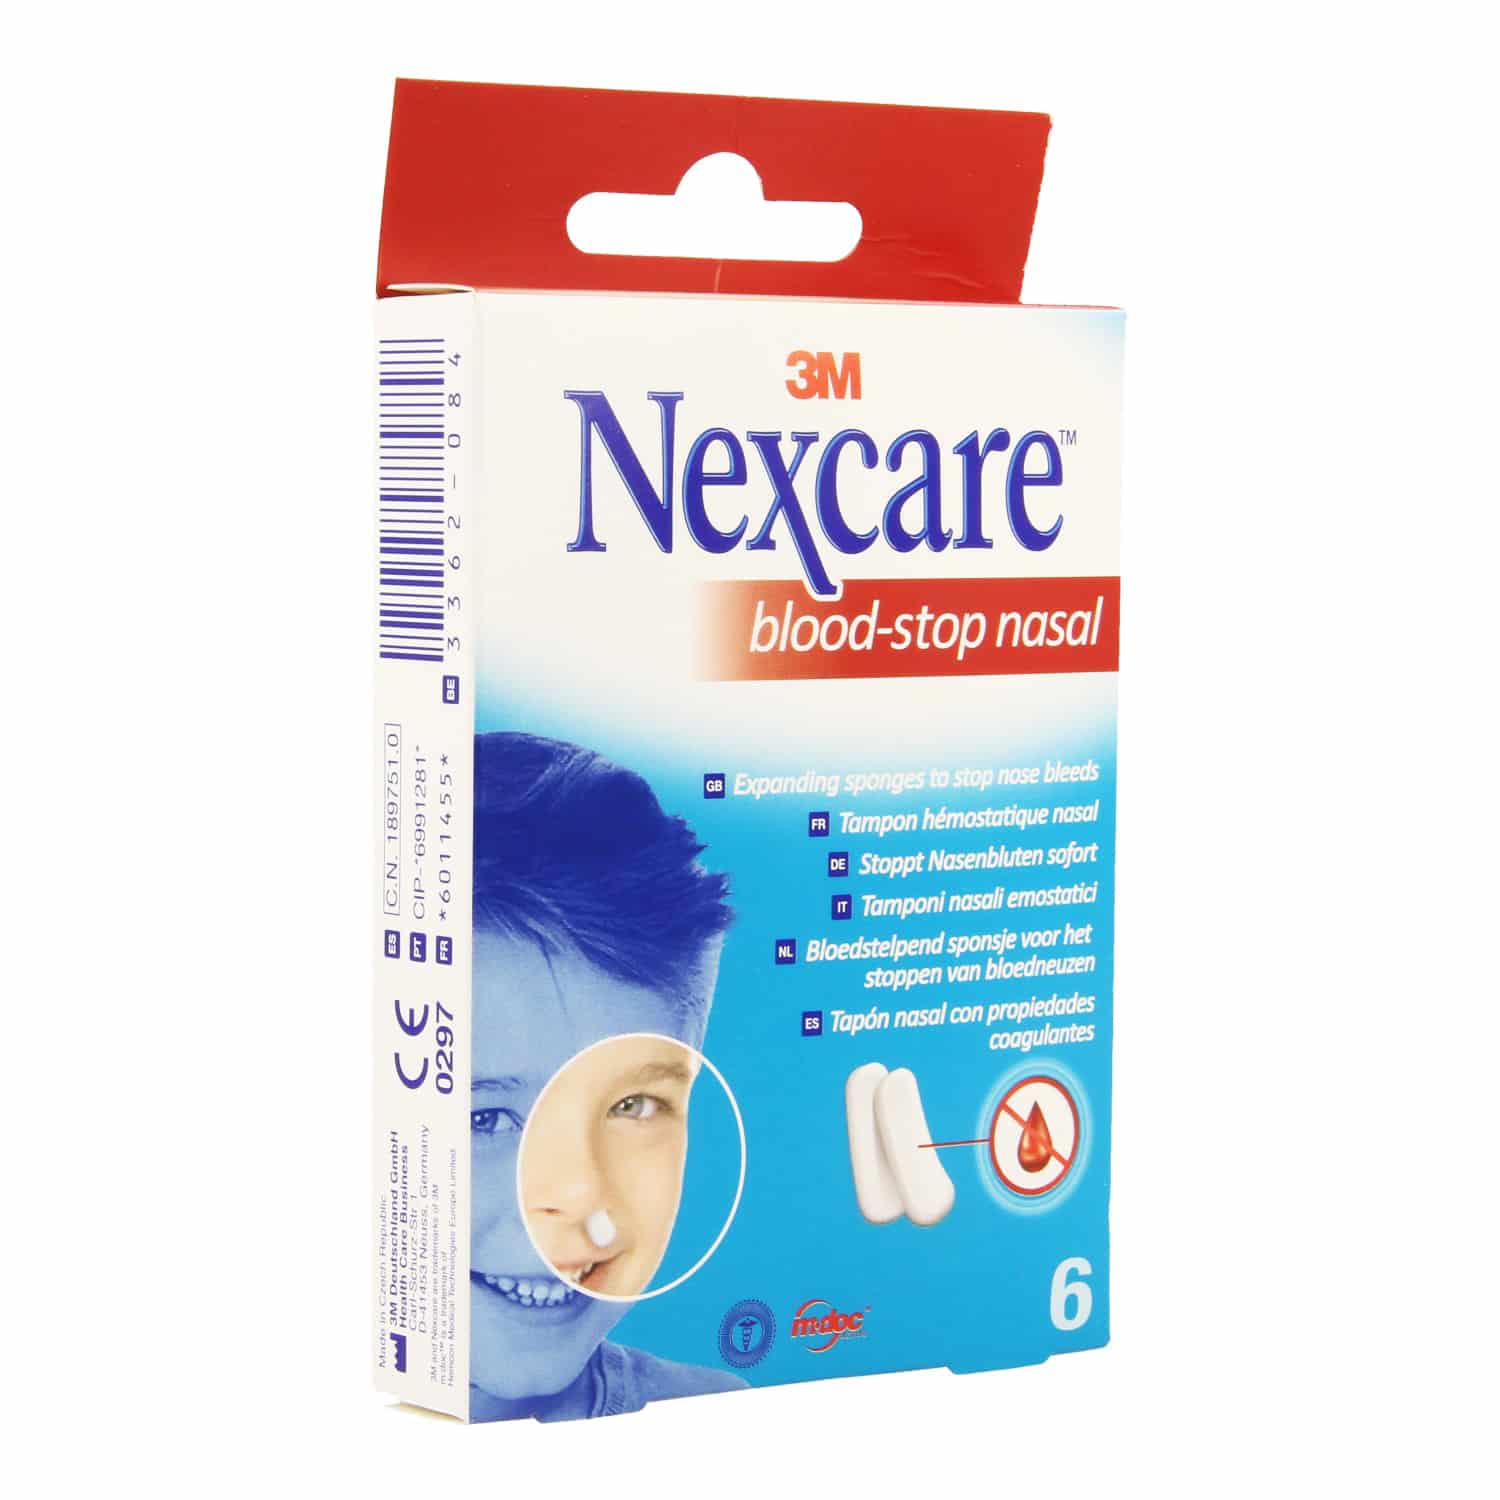 Nexcare Blood-Stop Nasal